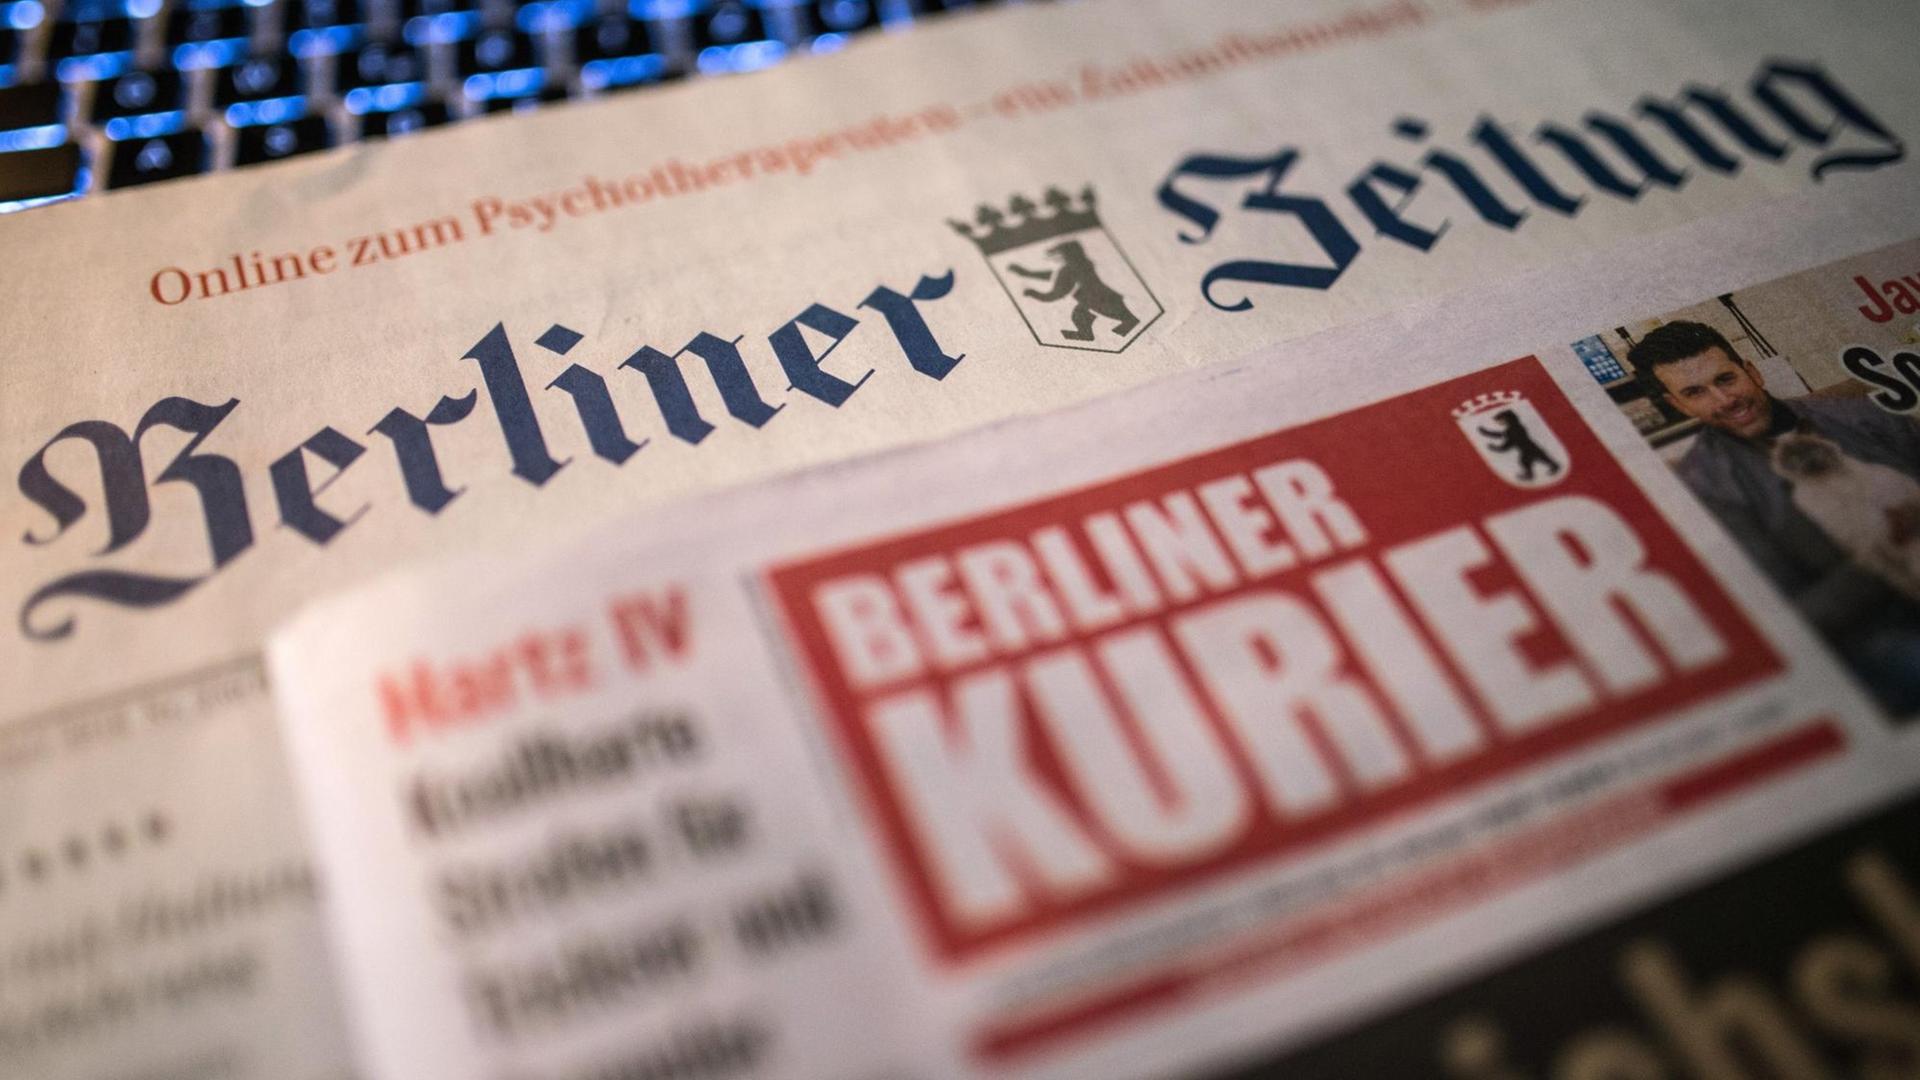 Auf einem Tisch in Berlin liegen zwei Ausgaben der Tageszeitungen "Berliner Zeitung" und "Berliner Kurier".